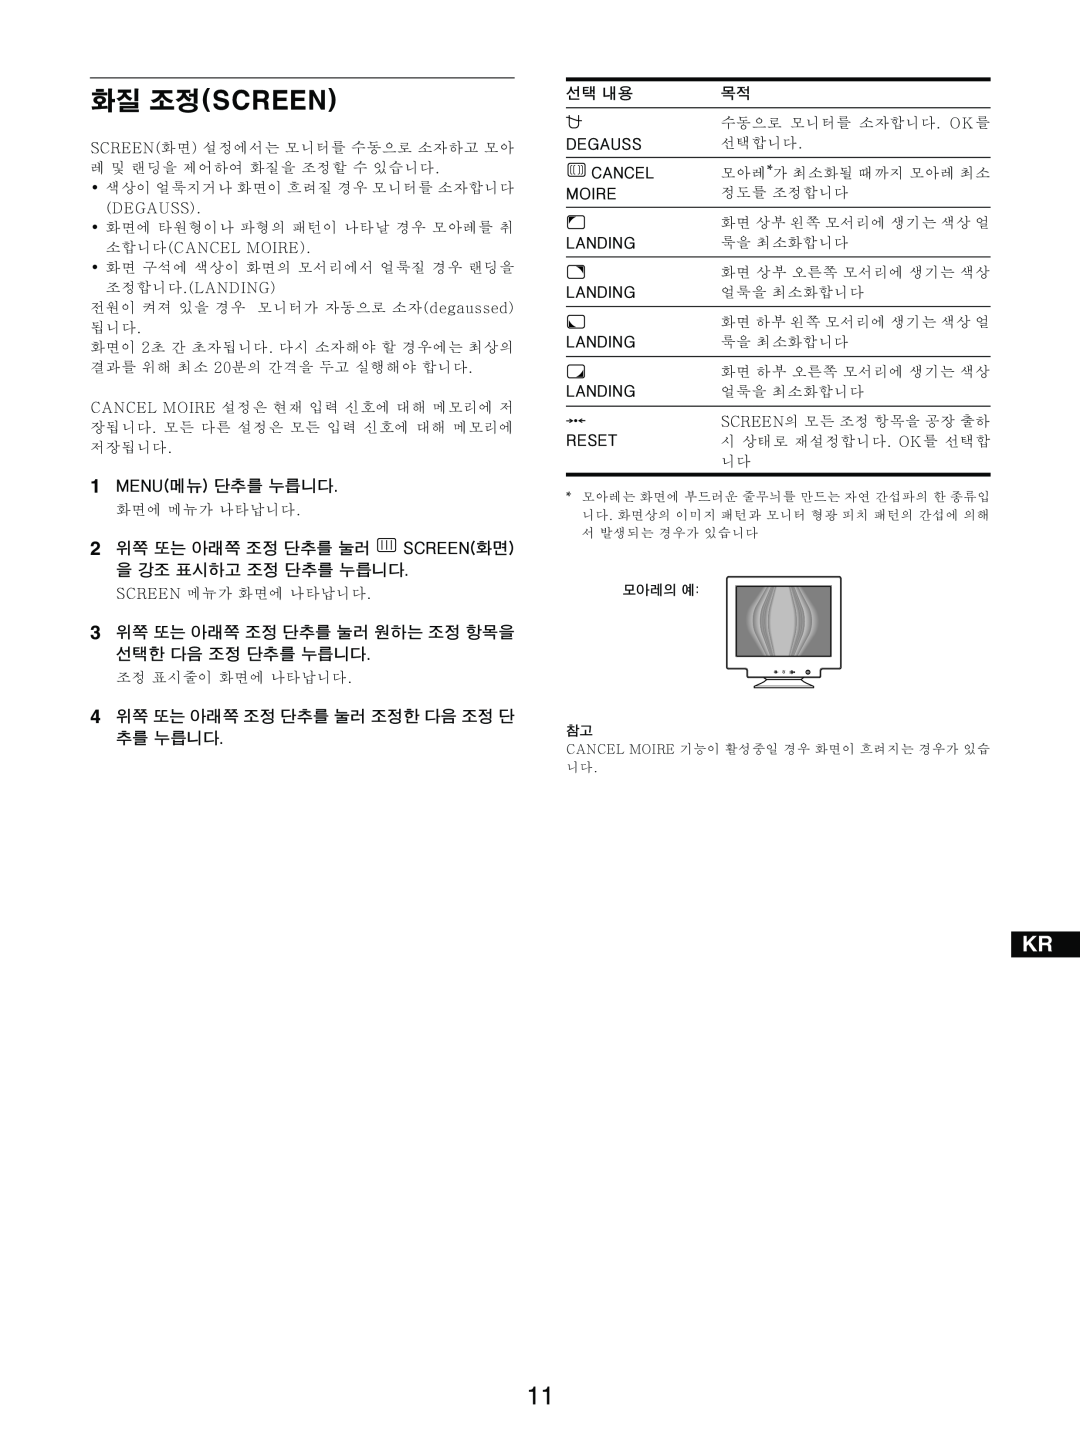 Sony GDM-5510 operating instructions =Ep`obbkF 